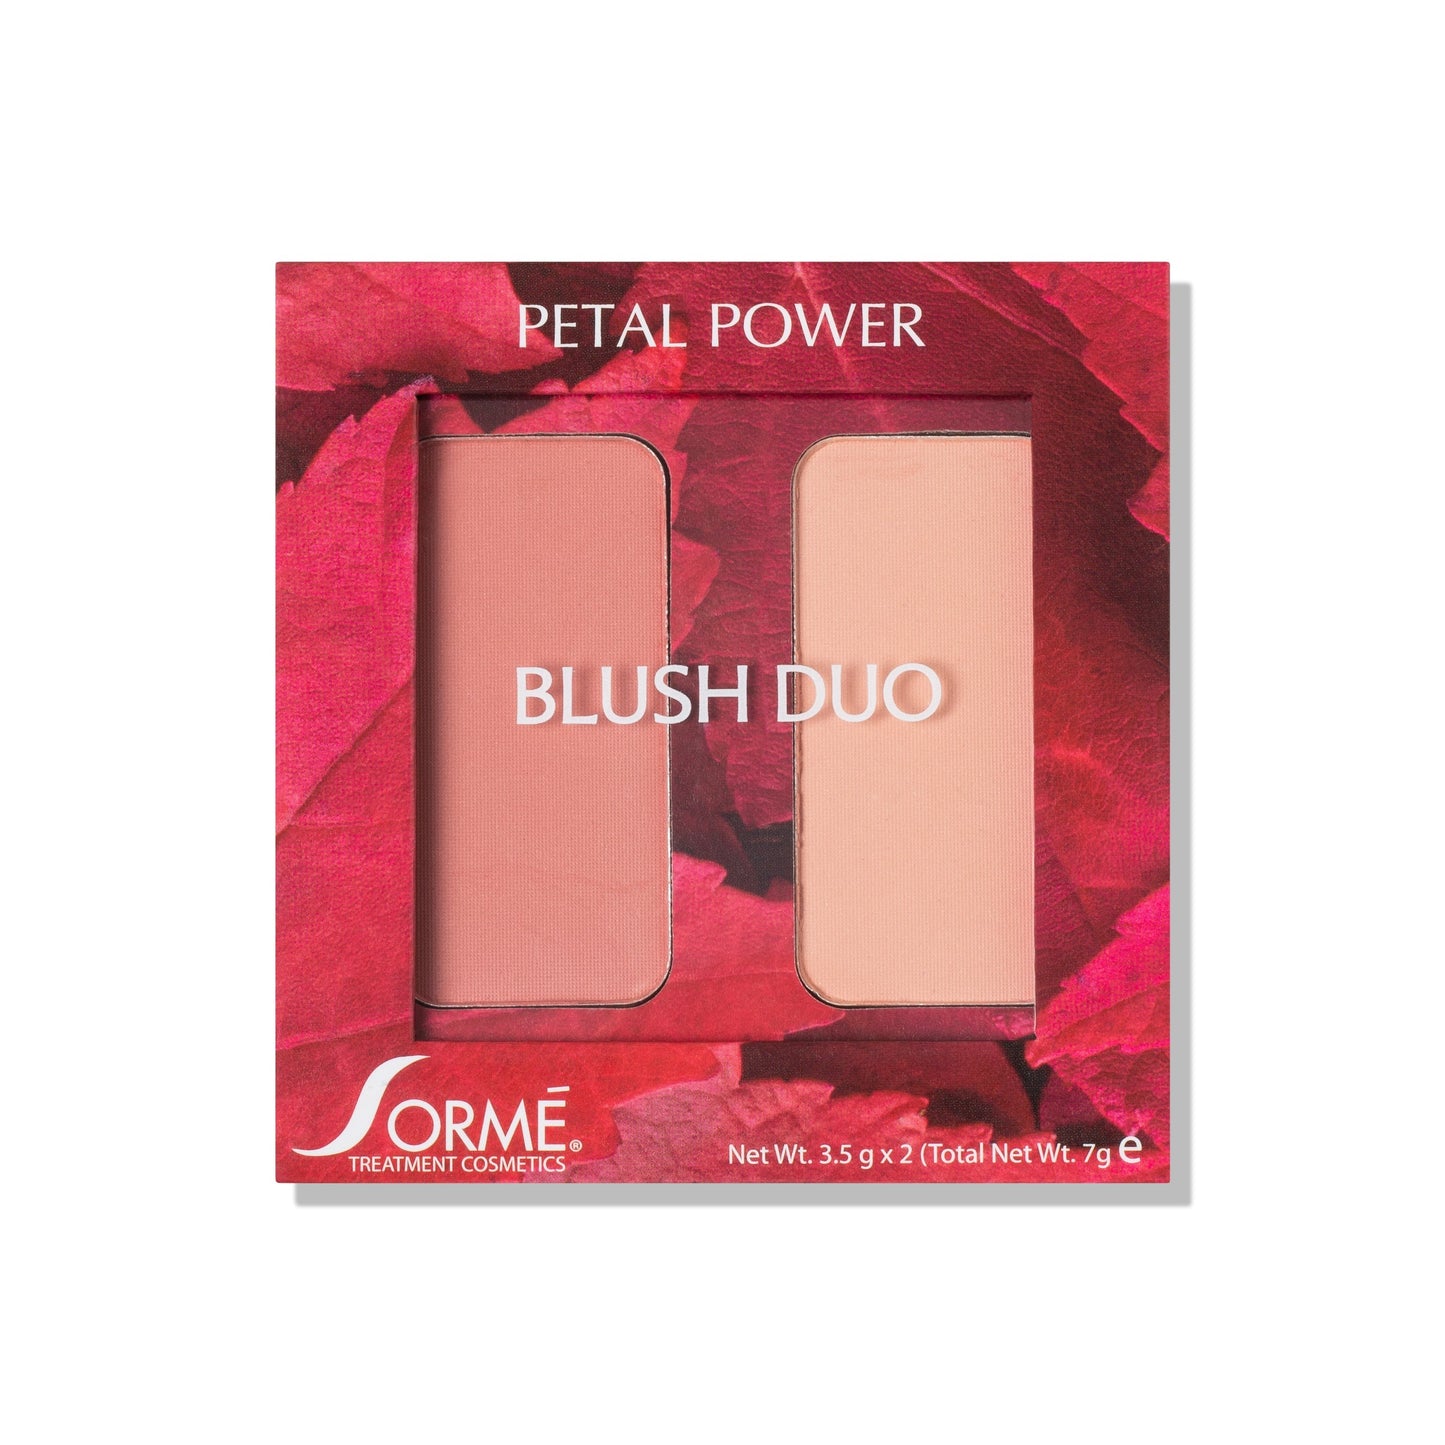 Sorme Blush Duo Compact Petal Power